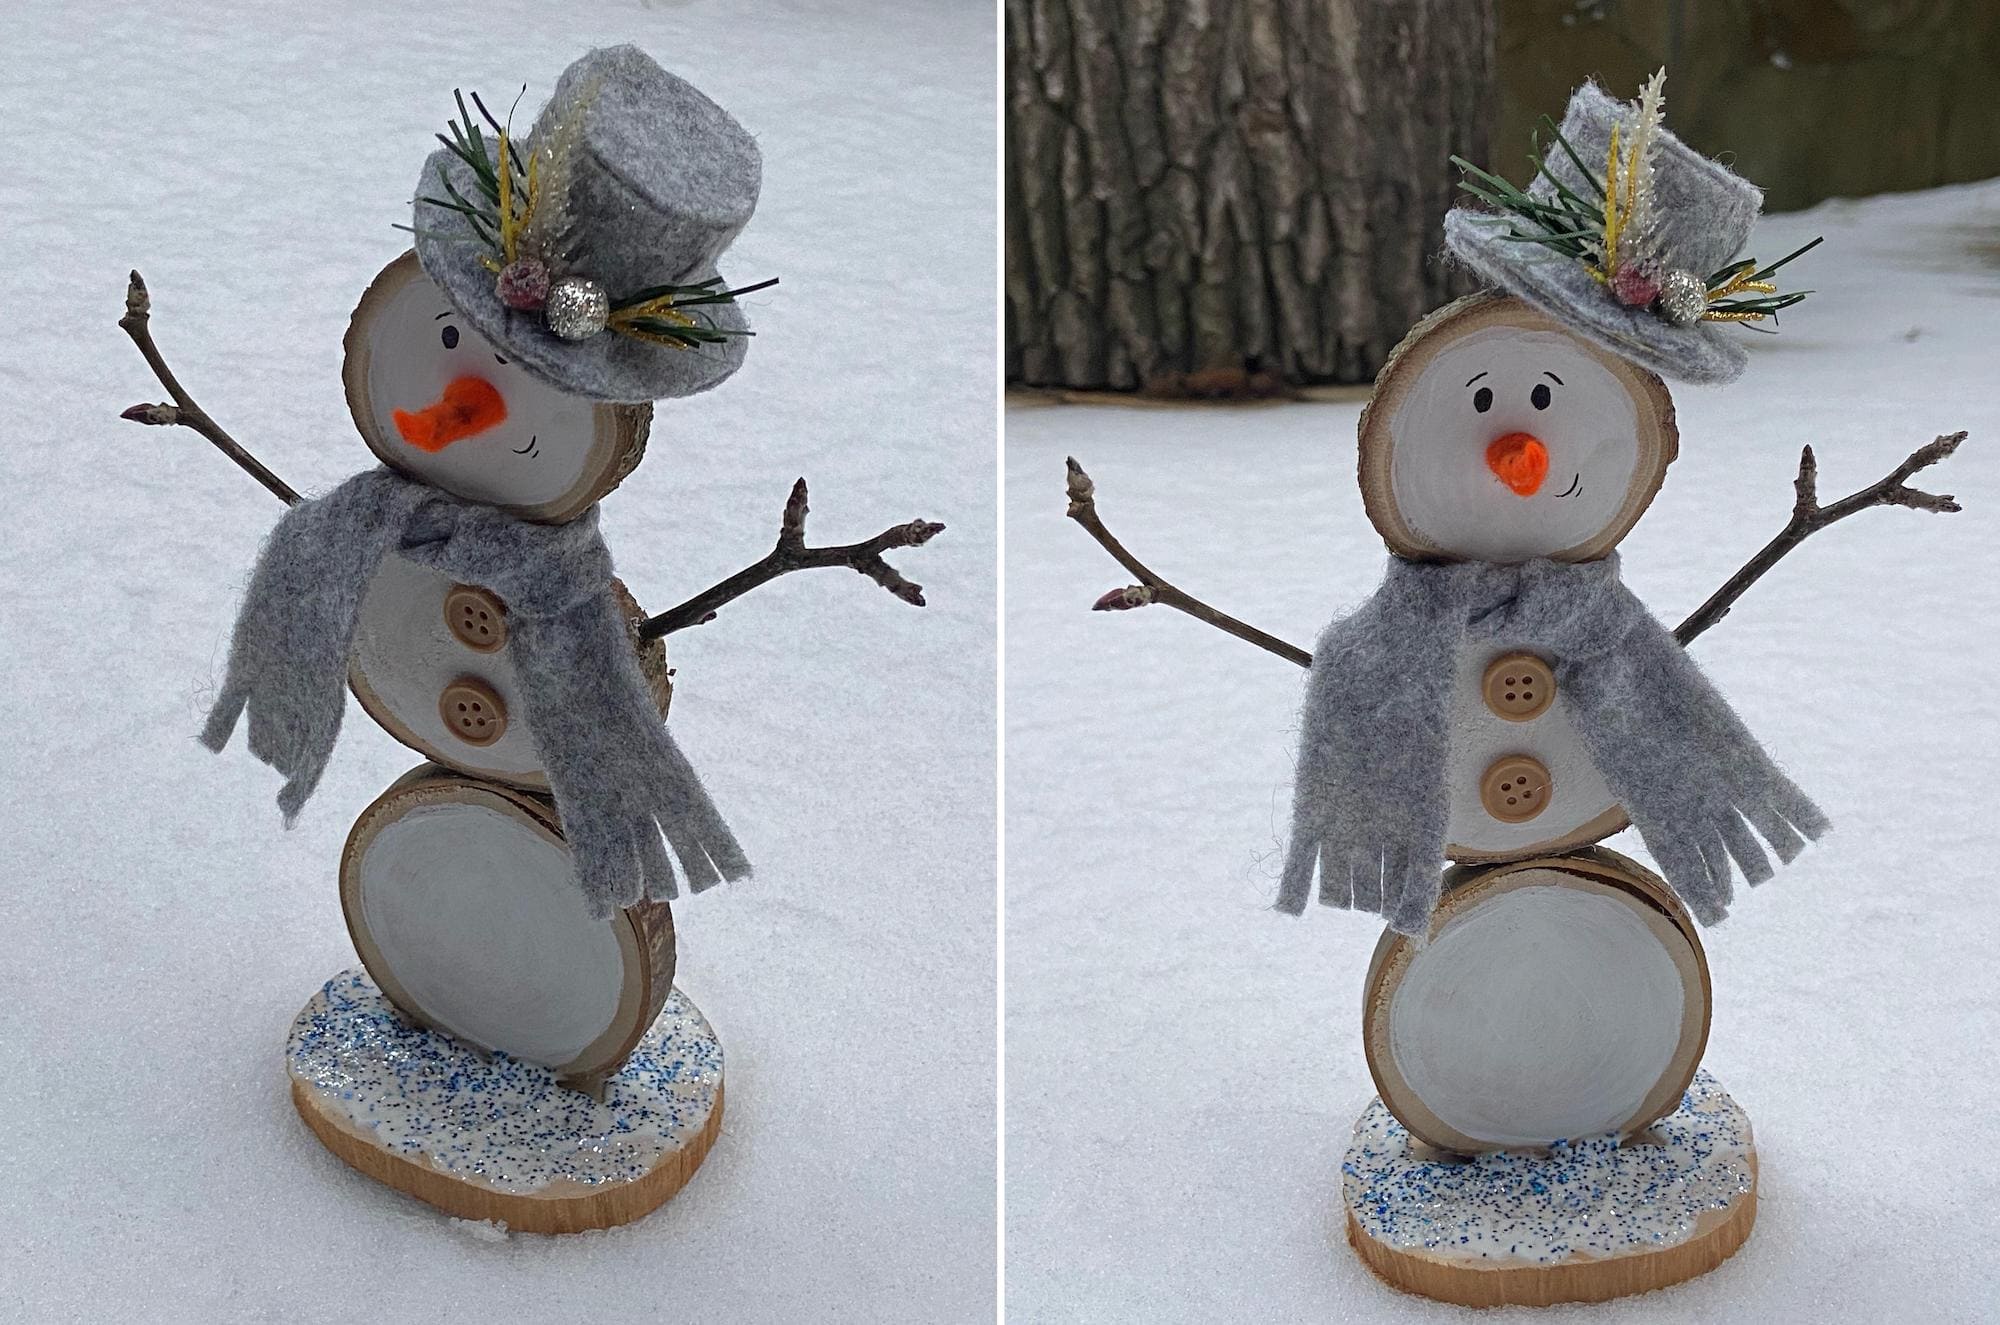 Игрушка-снеговик станет весьма хорошим подарком для друзей и близких